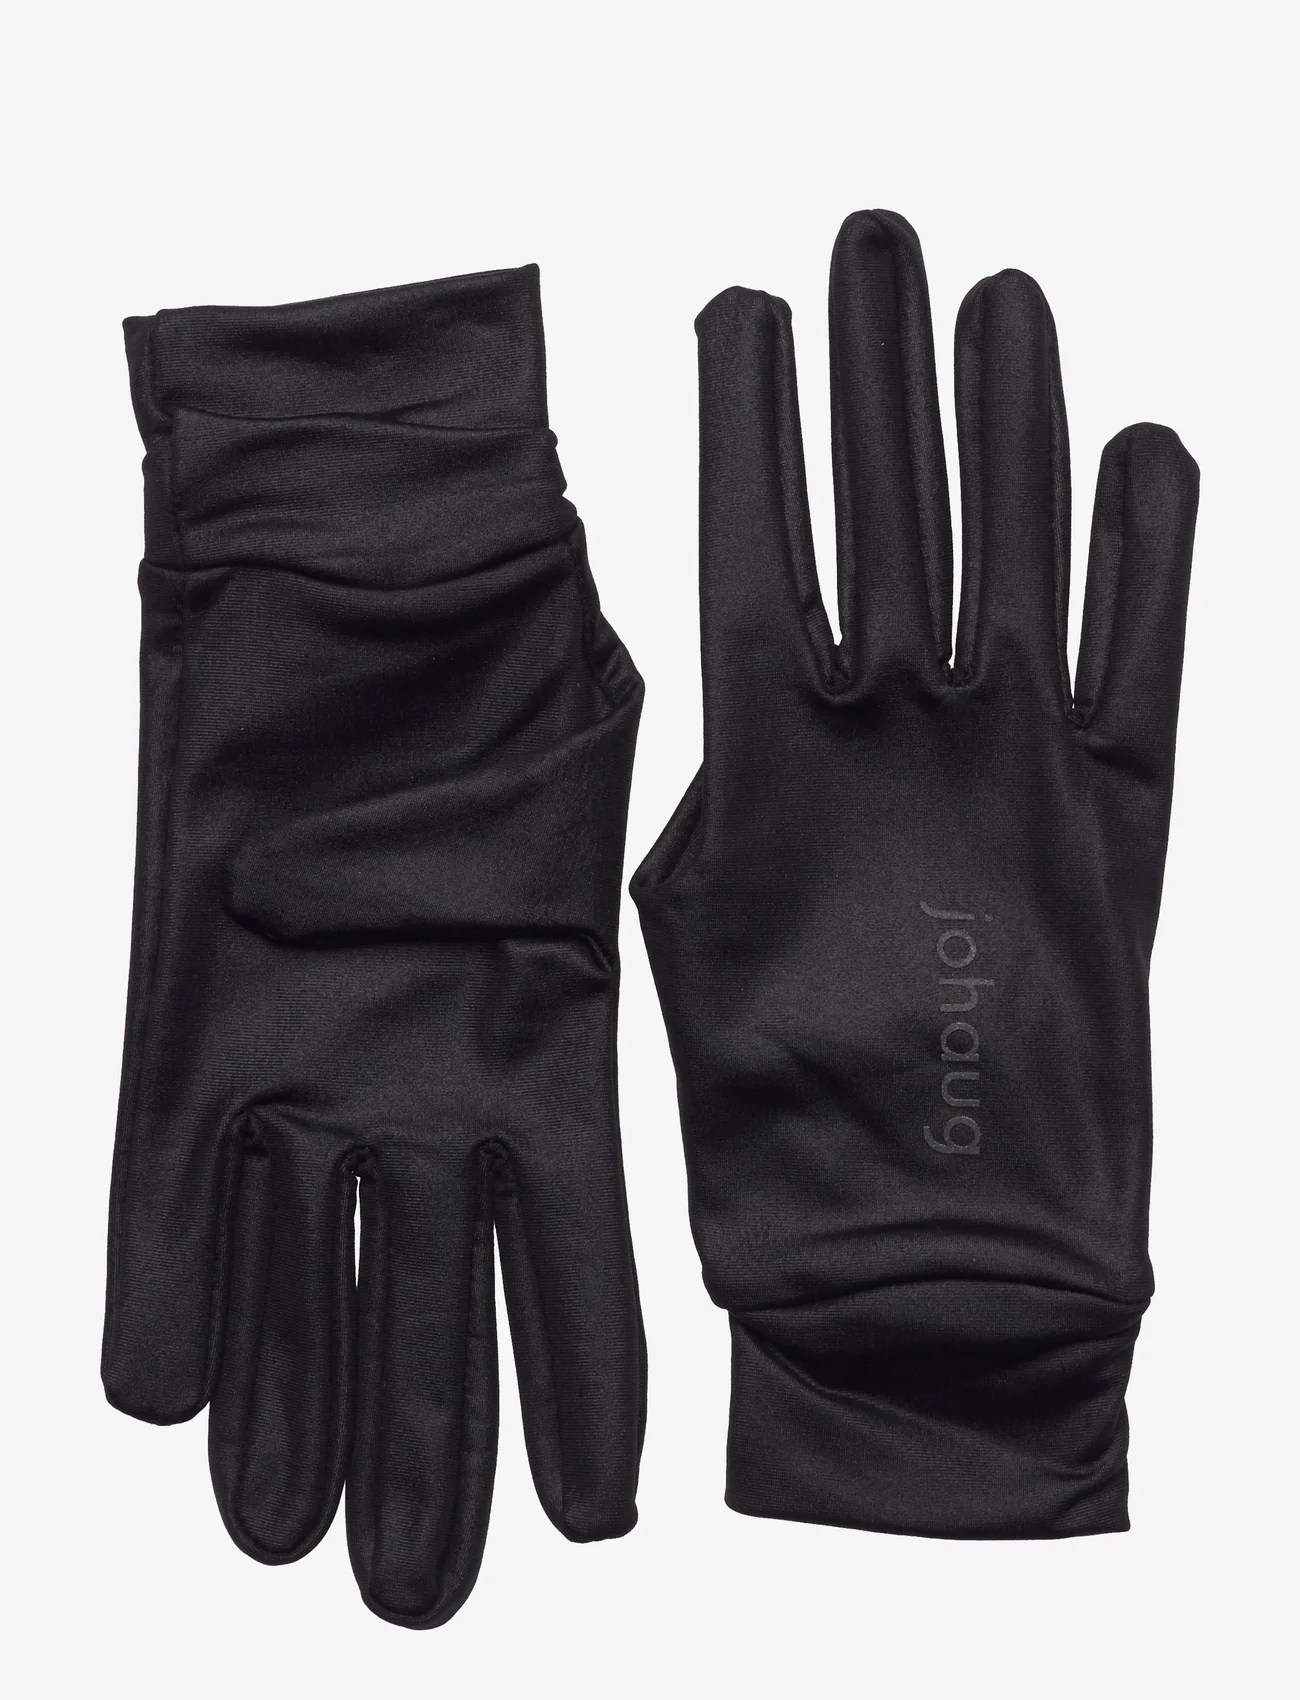 Johaug - Advance Running Glove - die niedrigsten preise - black - 0